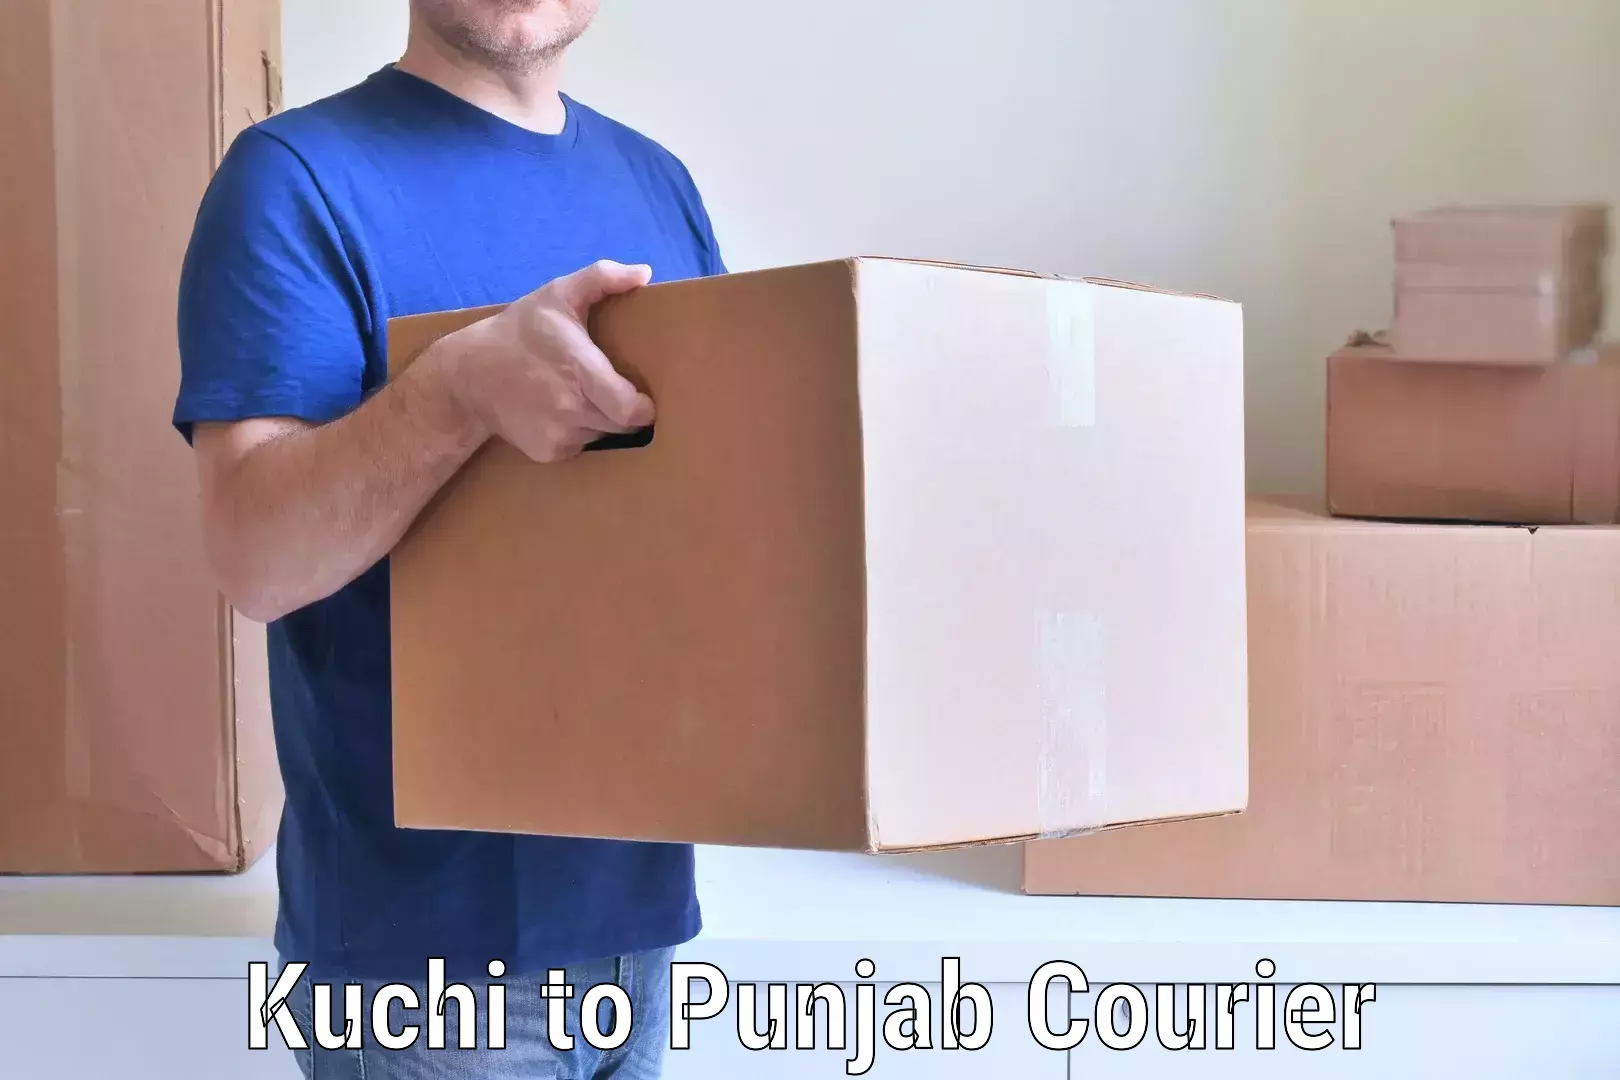 Skilled furniture transport Kuchi to Punjab